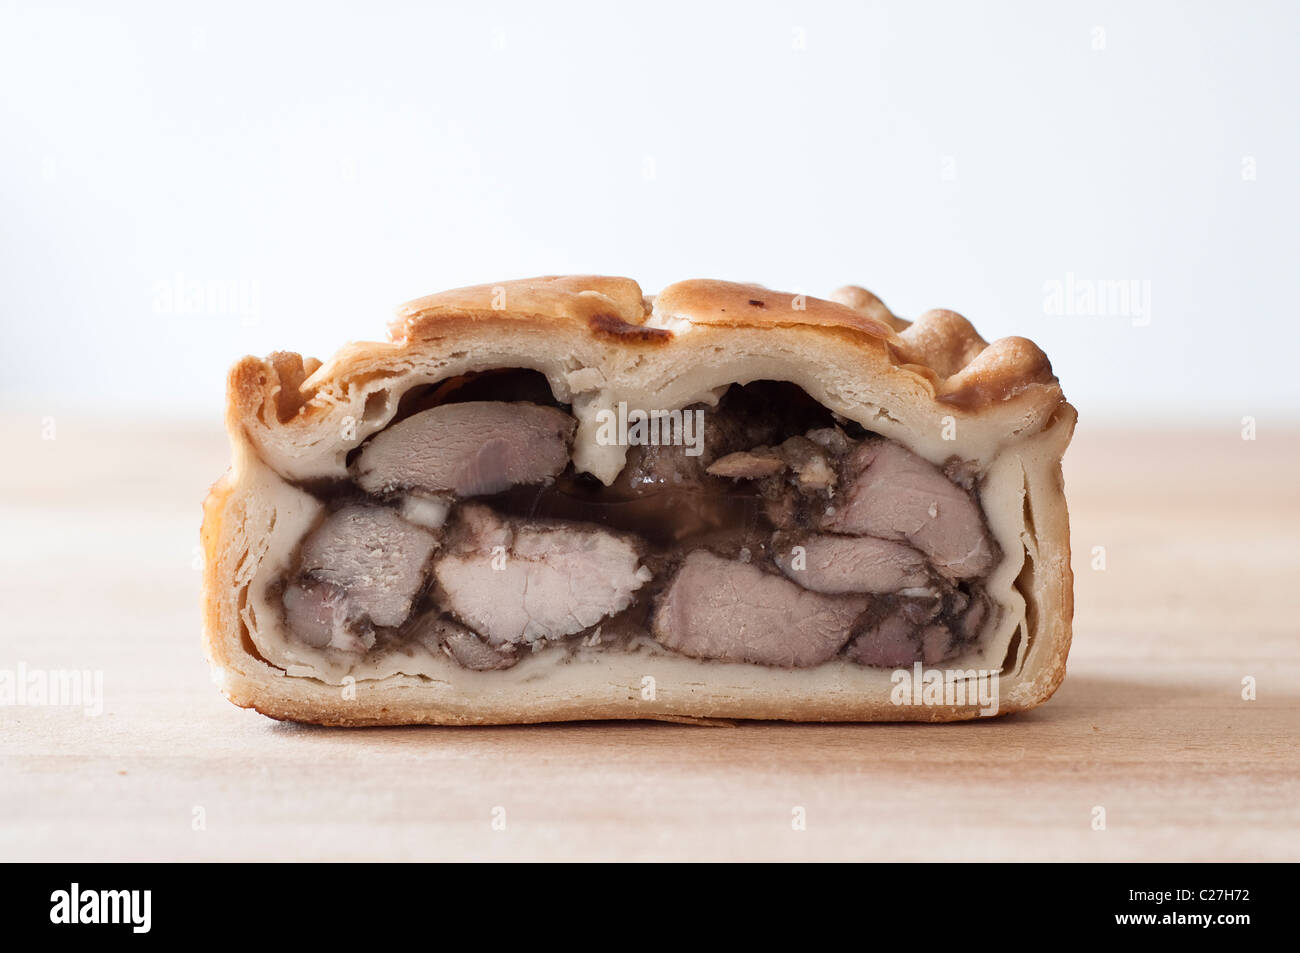 Einen Querschnitt von einer seltenen Rasse Pork Pie gemacht durch die berühmte Bothams-Bäckerei in Whitby, Yorkshire, Großbritannien. Stockfoto